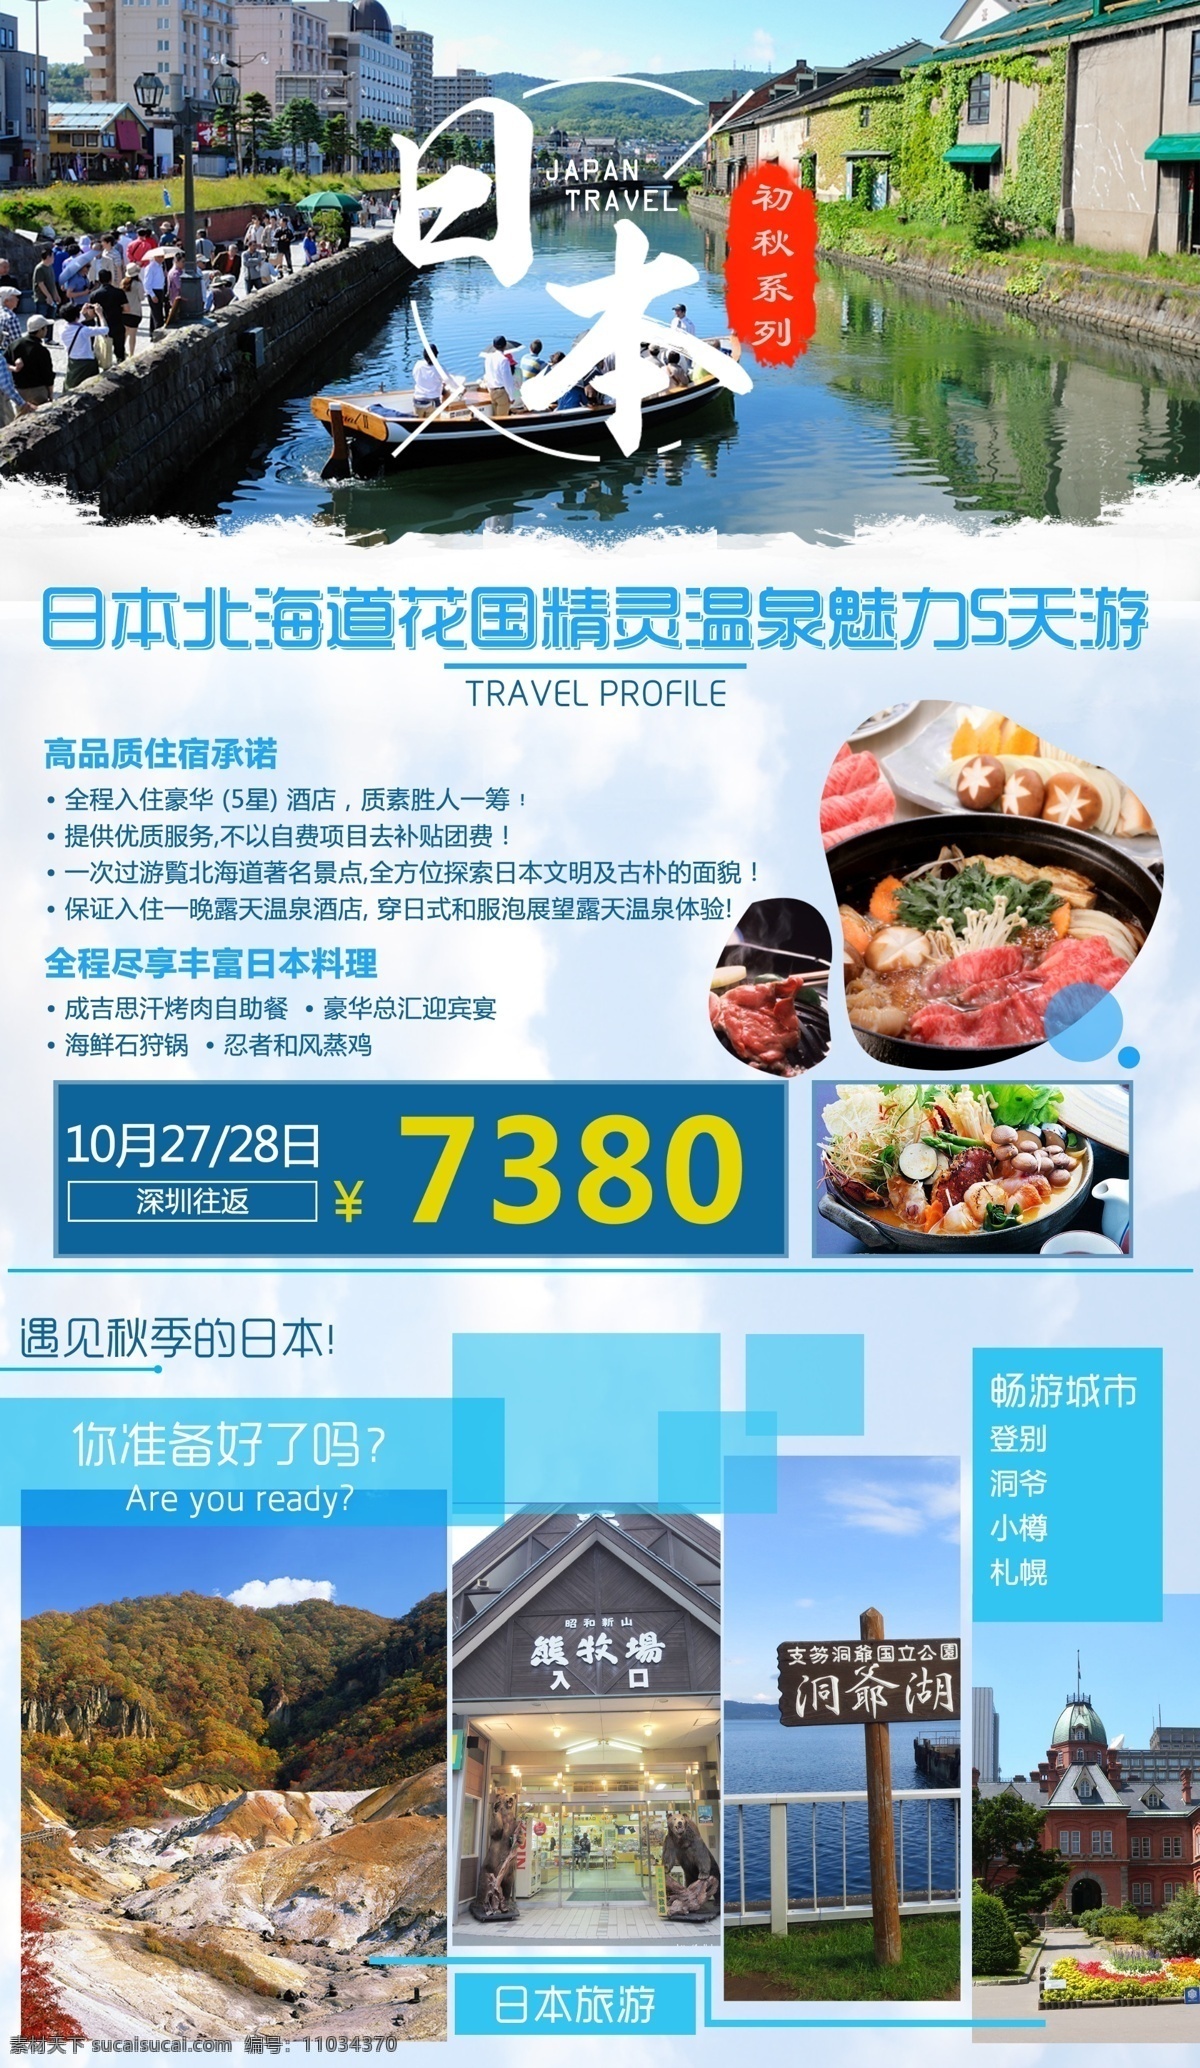 日本 北海道 花国 精灵 温泉 魅力 天 游 旅游 大气 创意